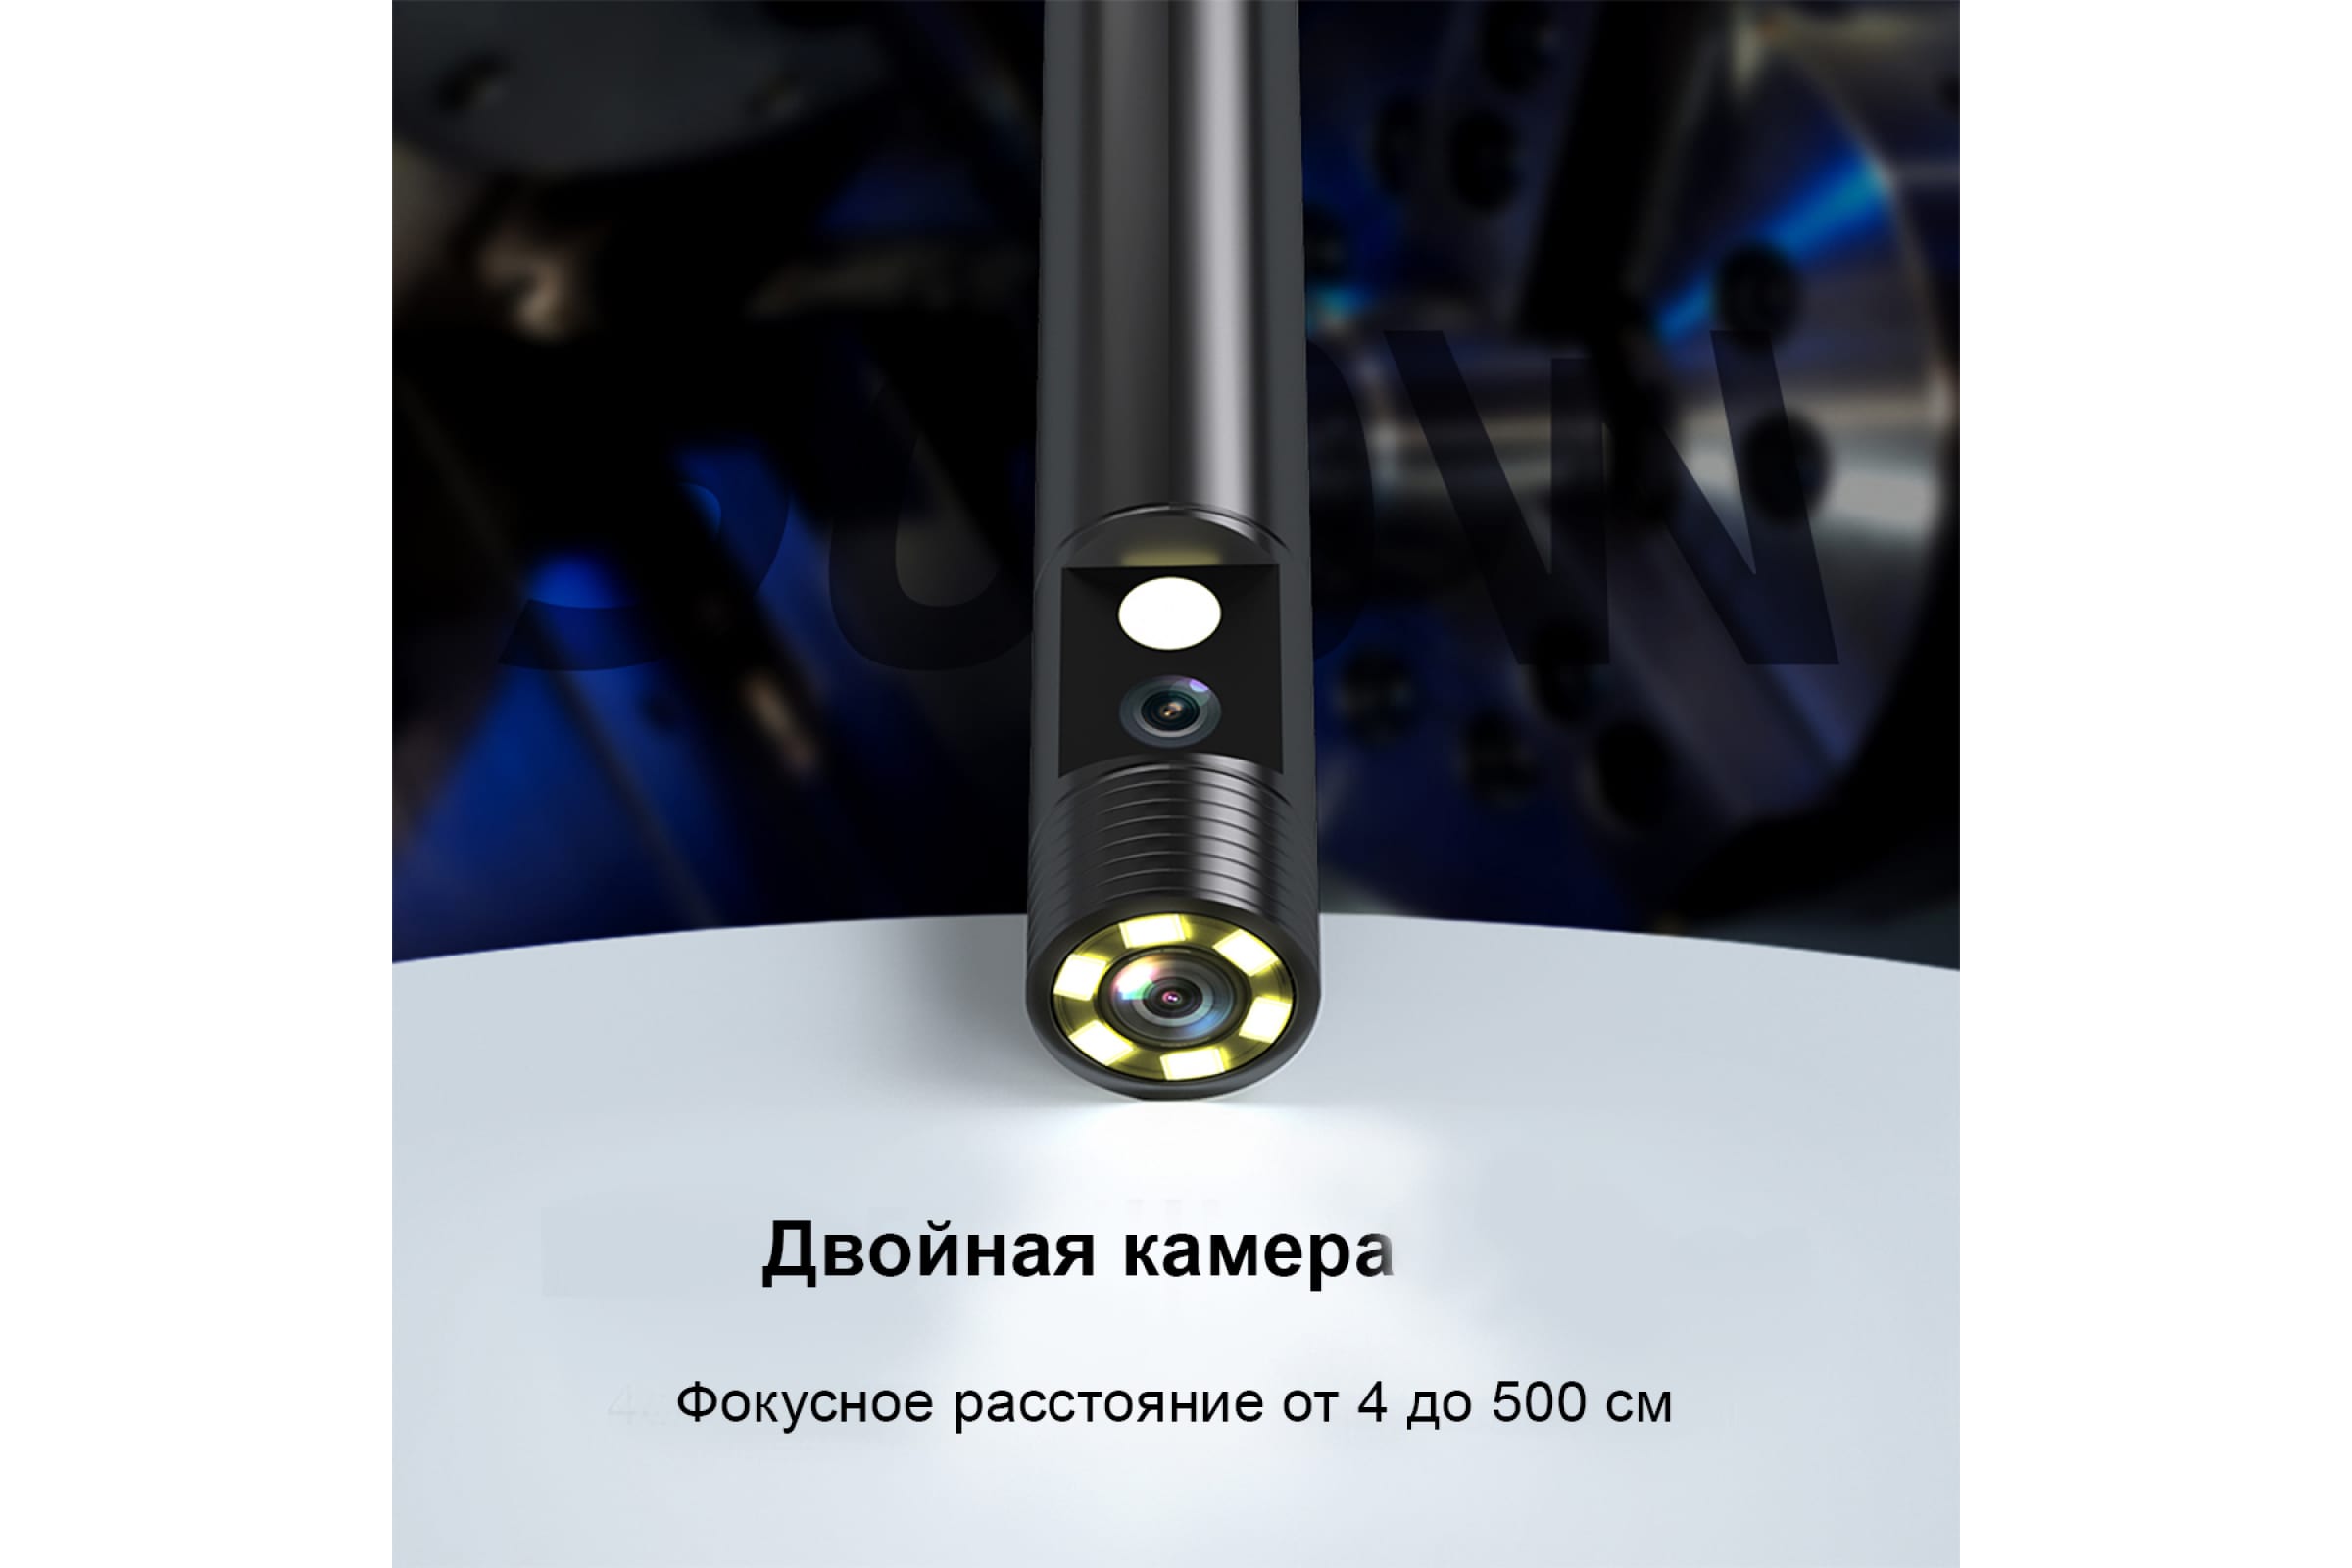 Wi-Fi-видеоэндоскоп iCartool IC-V100A  по выгодной цене Москве и .